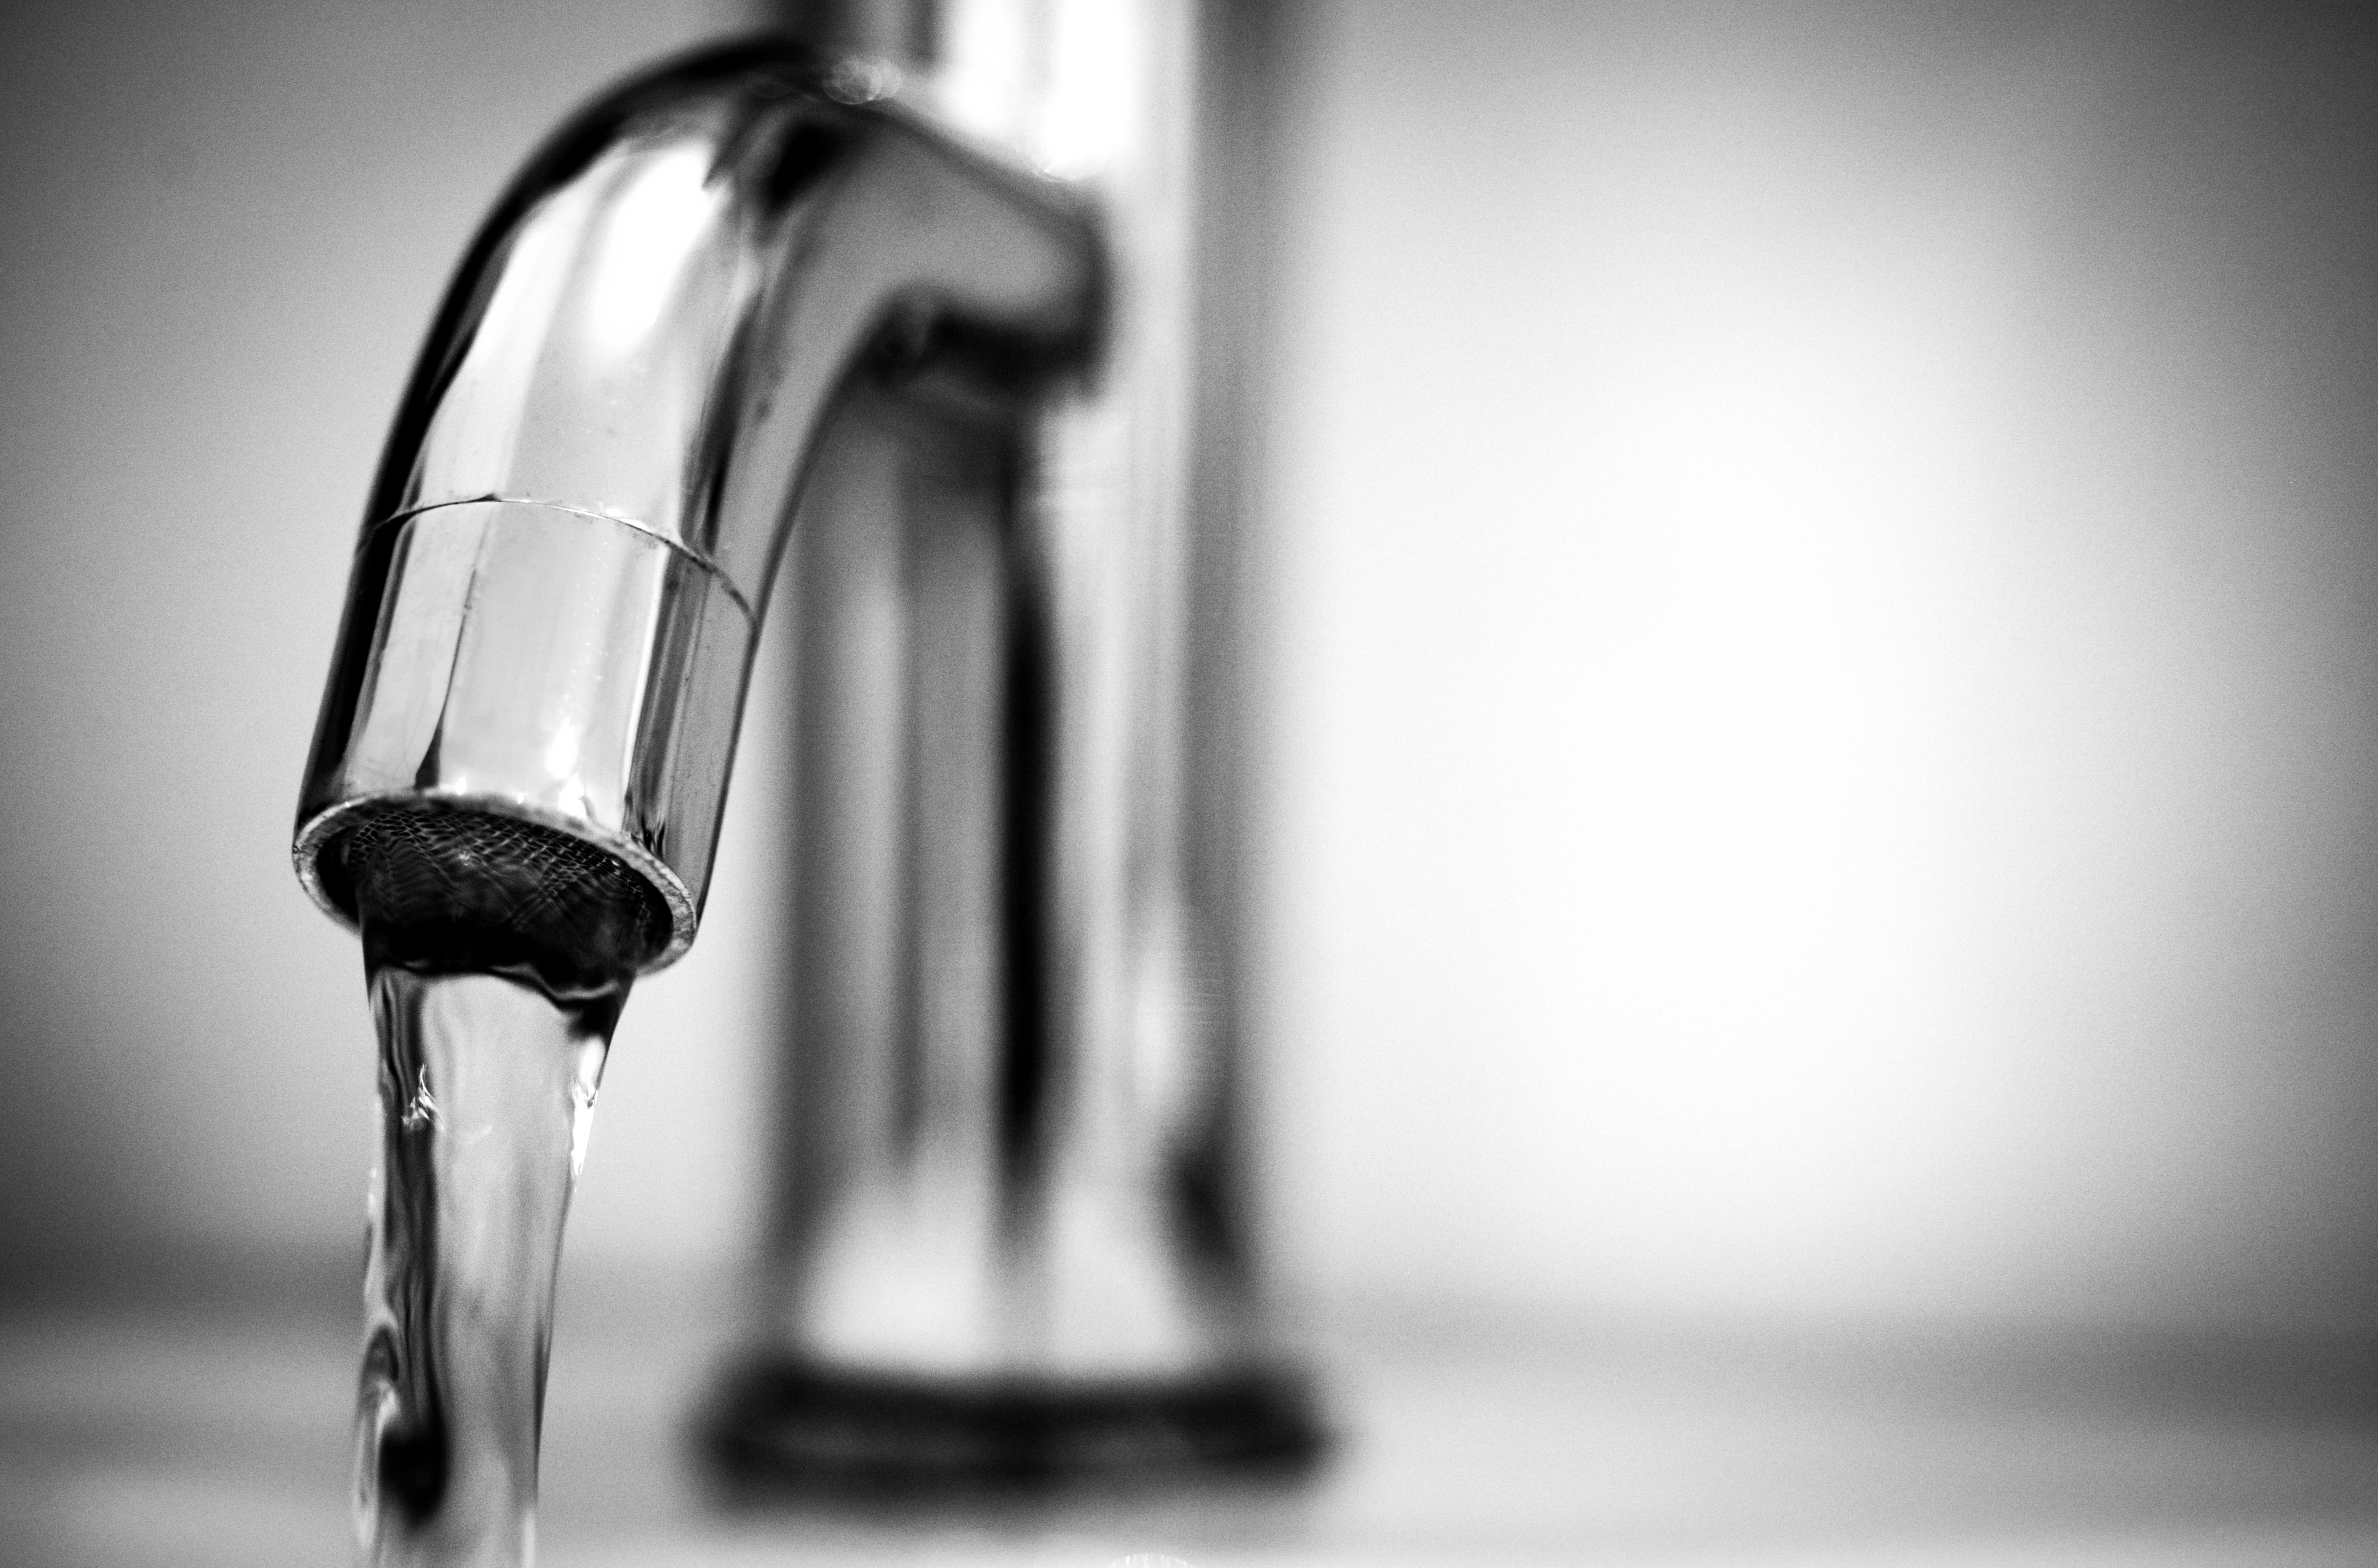 ברז מים - Macro Photography of a Stainless Steel Faucet